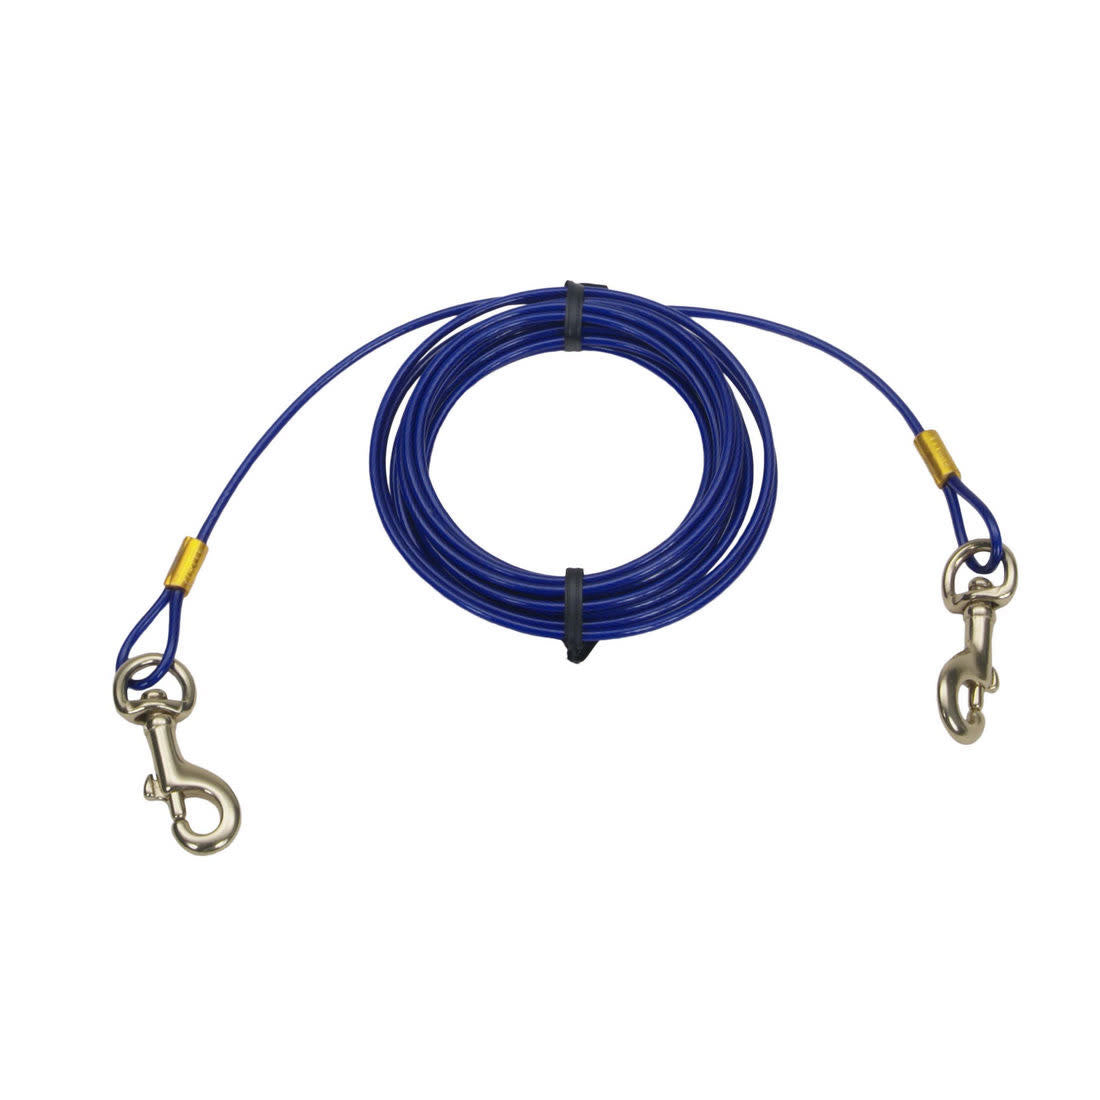 Costal cable dattache 30 pieds Câble d'attache pour chiens Moyen